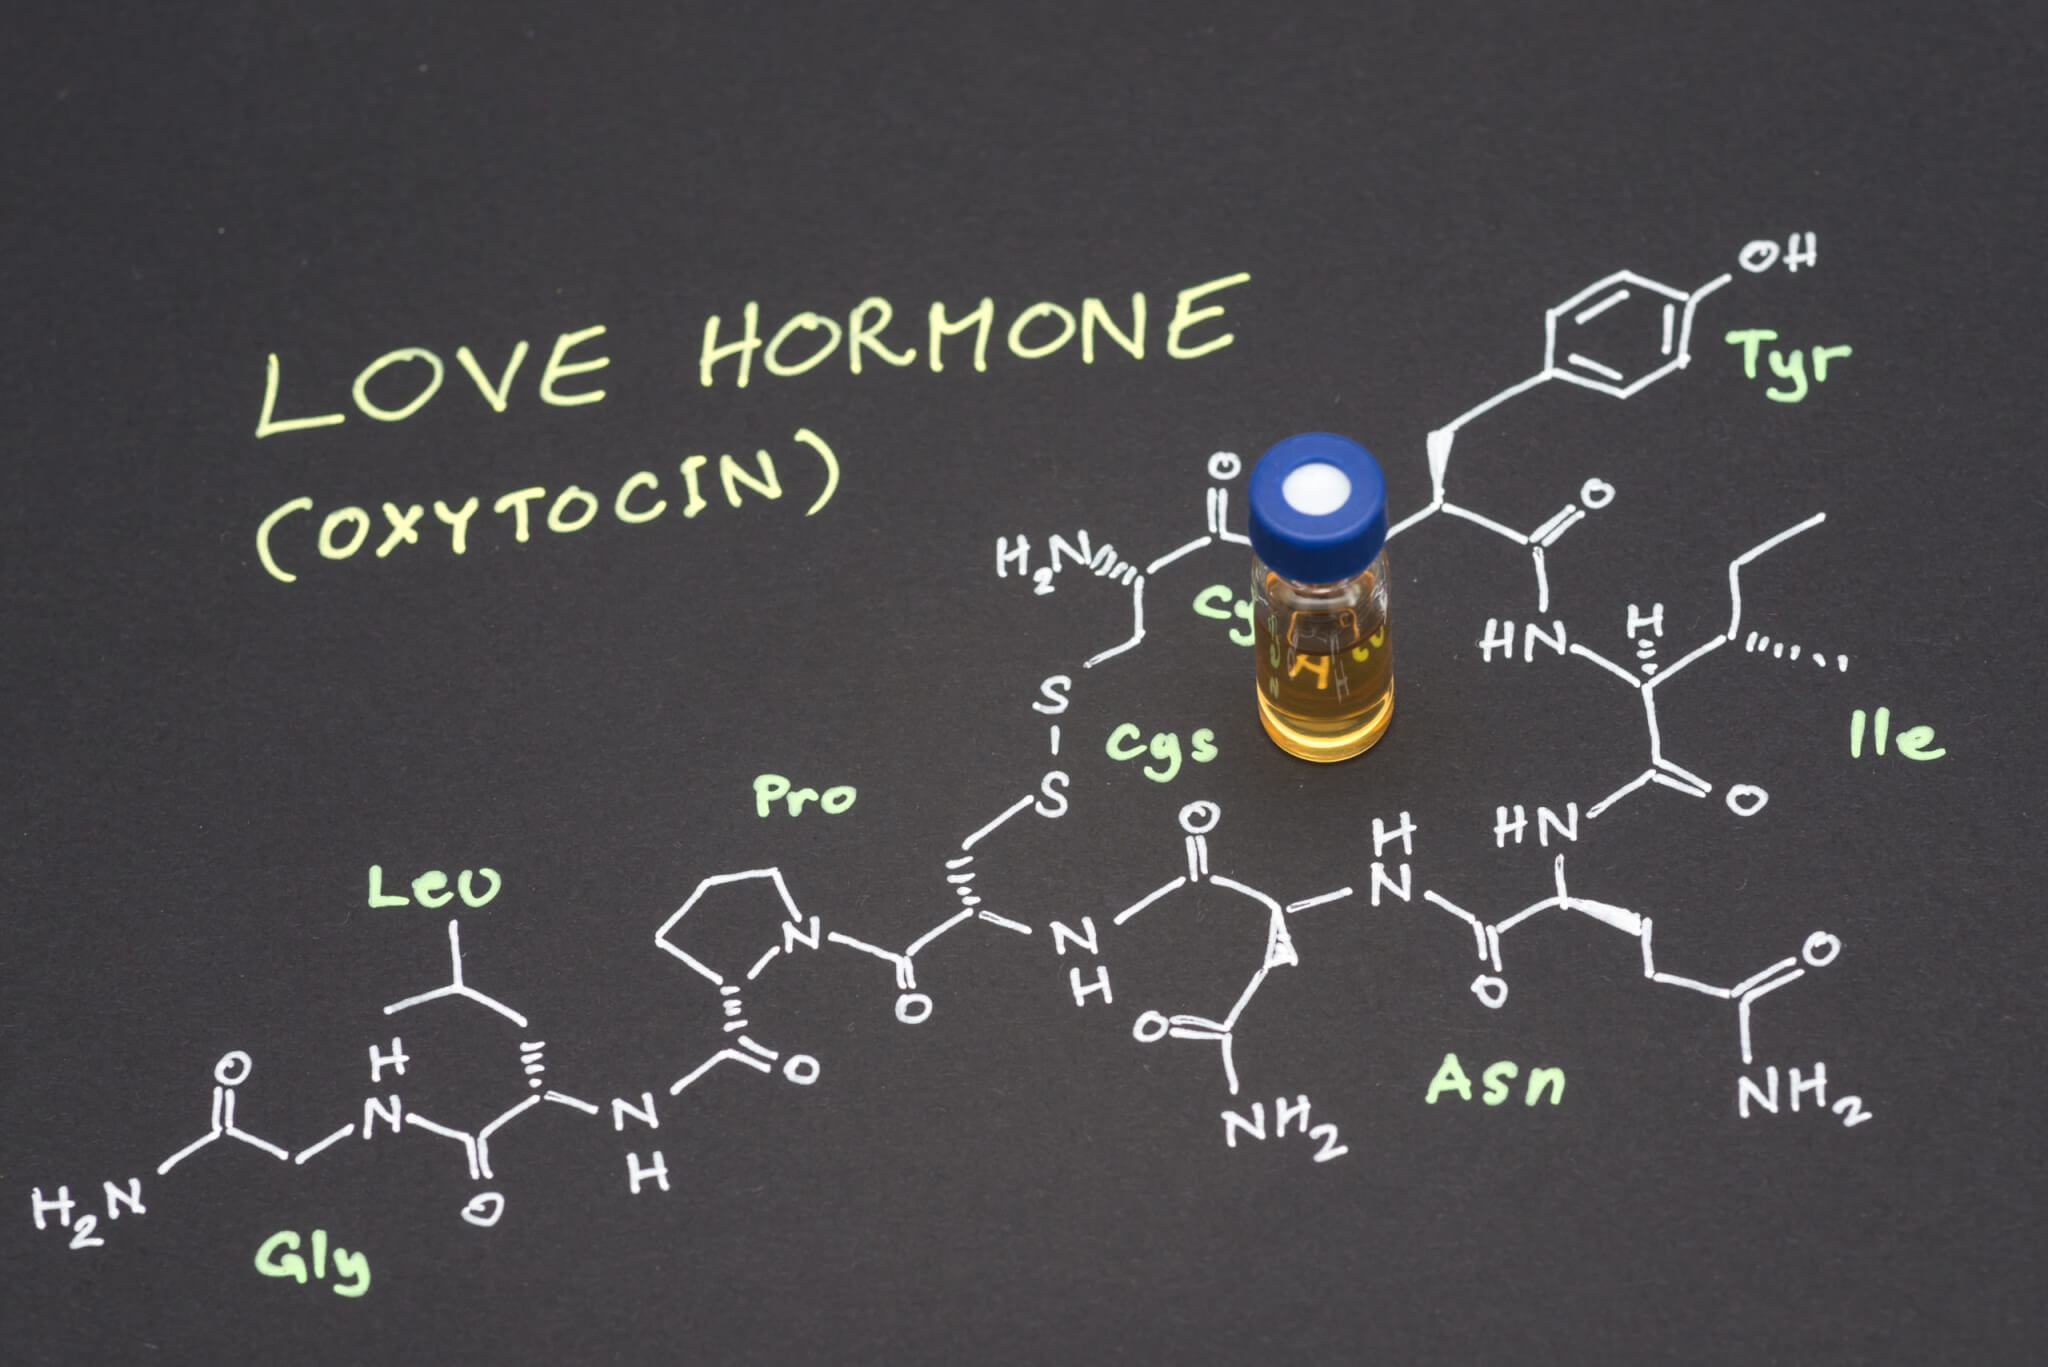 Love hormone Oxytocin